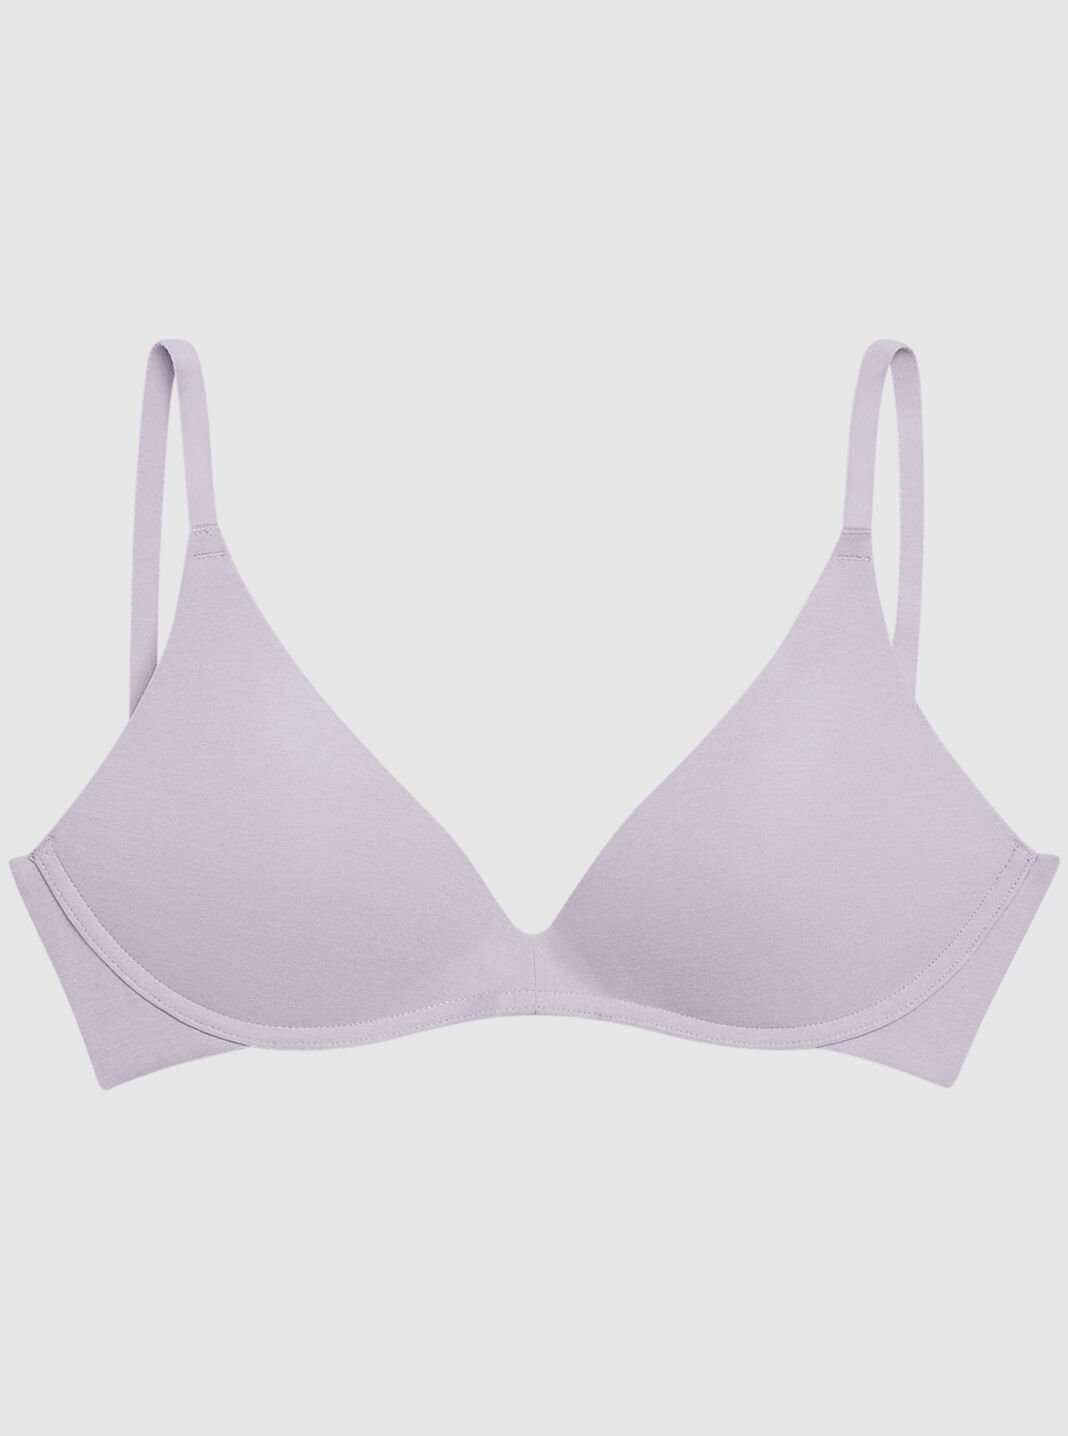 Buy Amante Ladies Solid Potent Purple Bra Online - Lulu